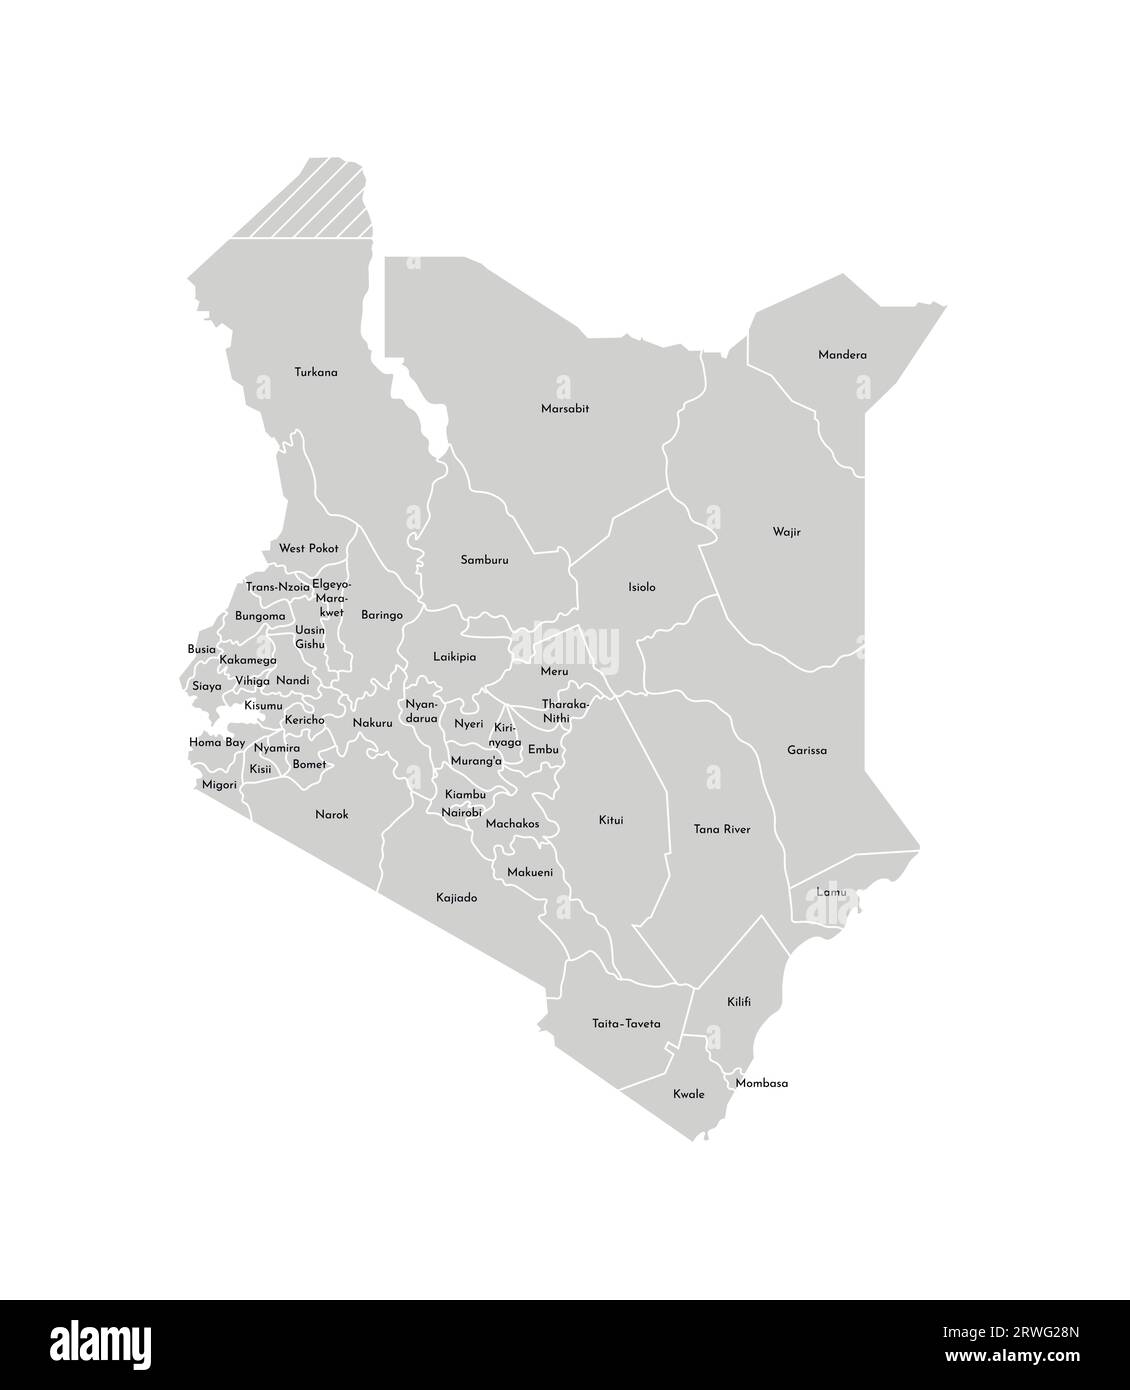 Vektorisolierte Darstellung einer vereinfachten Verwaltungskarte Kenias. Grenzen und Namen der Bezirke (Regionen). Graue Silhouetten. Weiße Umrandung Stock Vektor